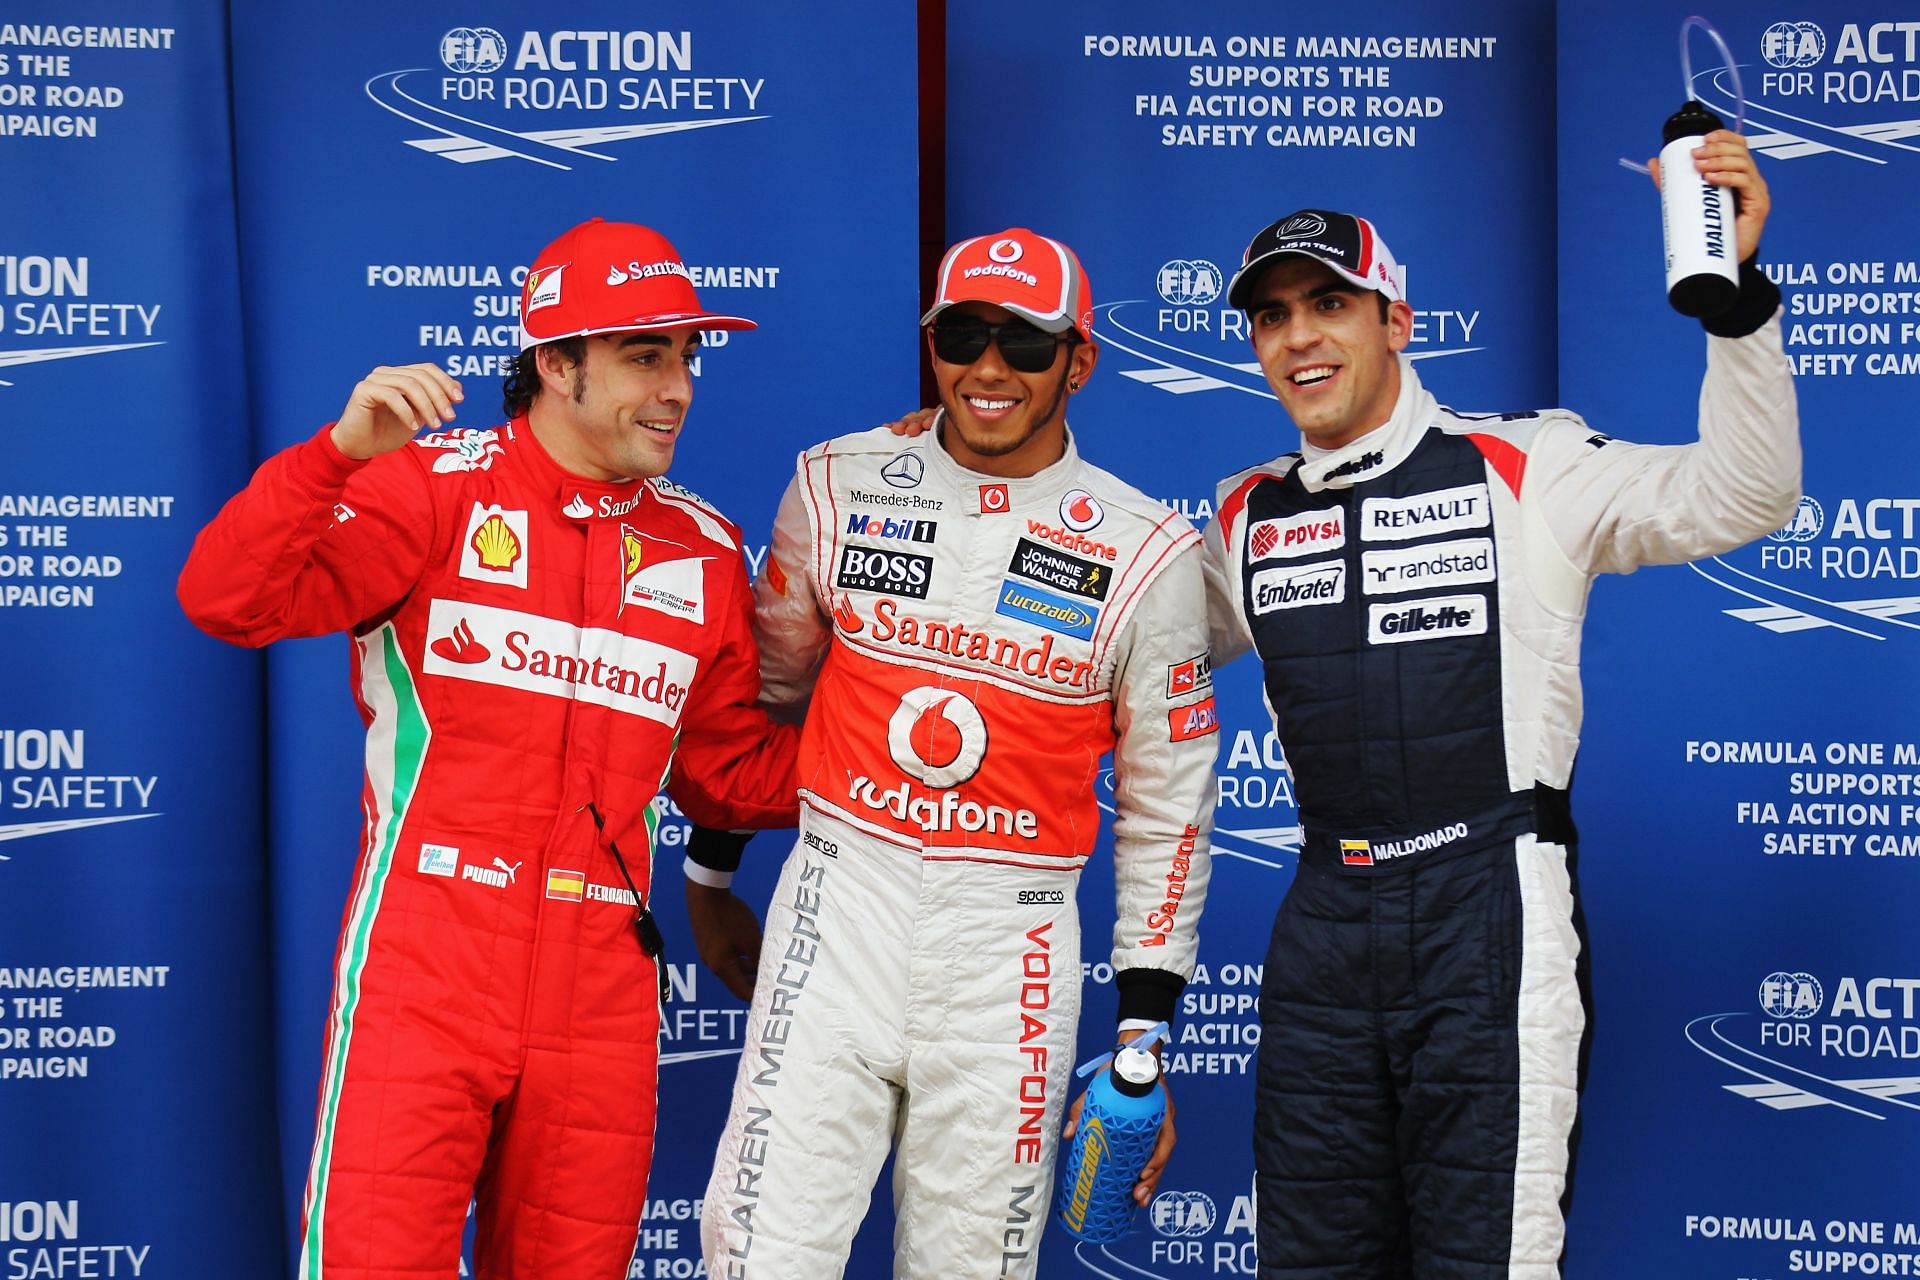 Lewis Hamilton (center) and Pastor Maldonado (right) at the Spanish Grand Prix in 2012